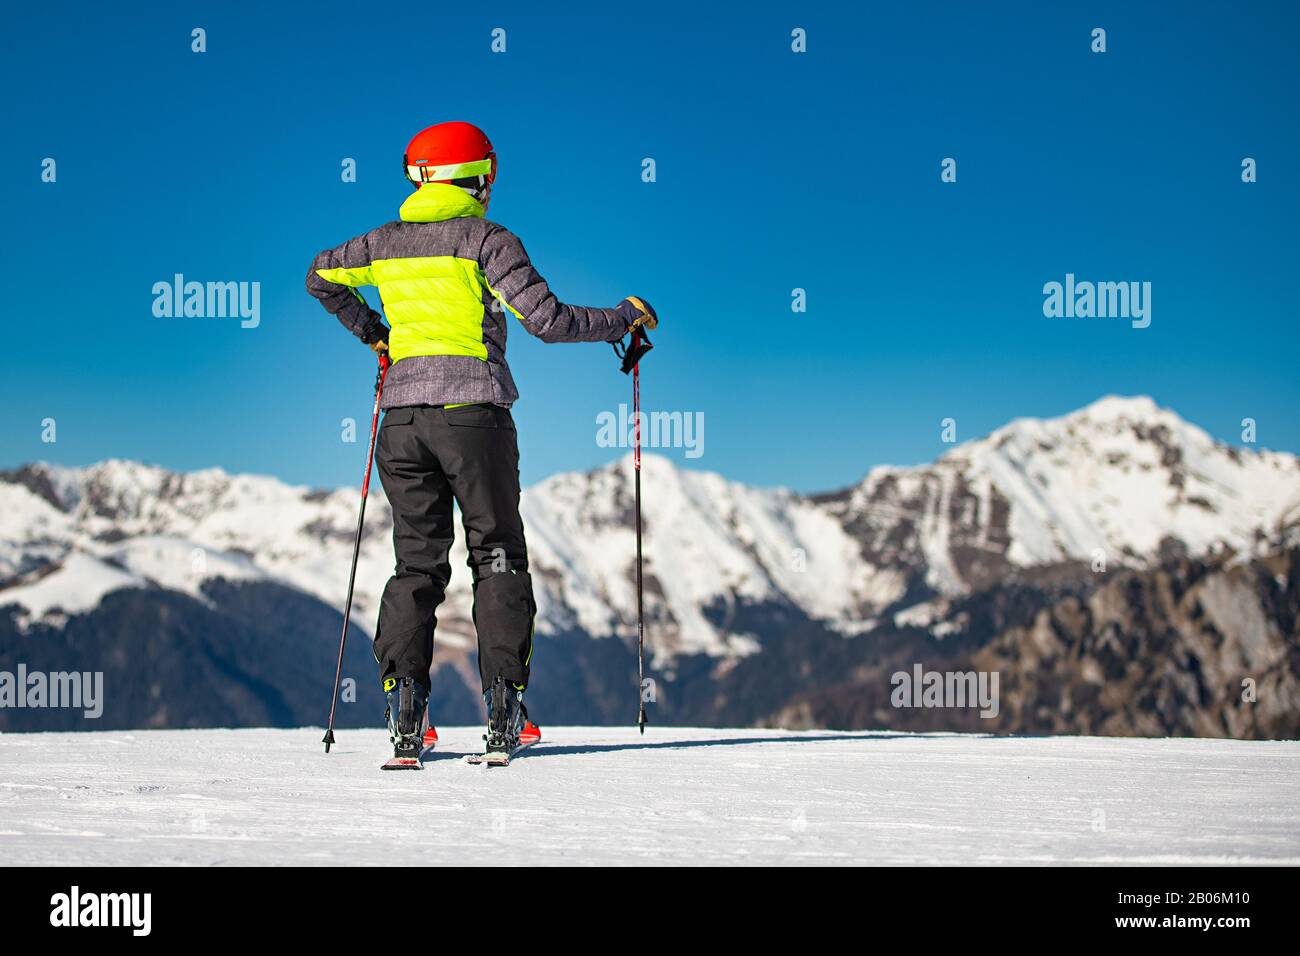 Sur les pistes de ski d'un domaine skiable, un skieur regarde les montagnes avant de skier Banque D'Images